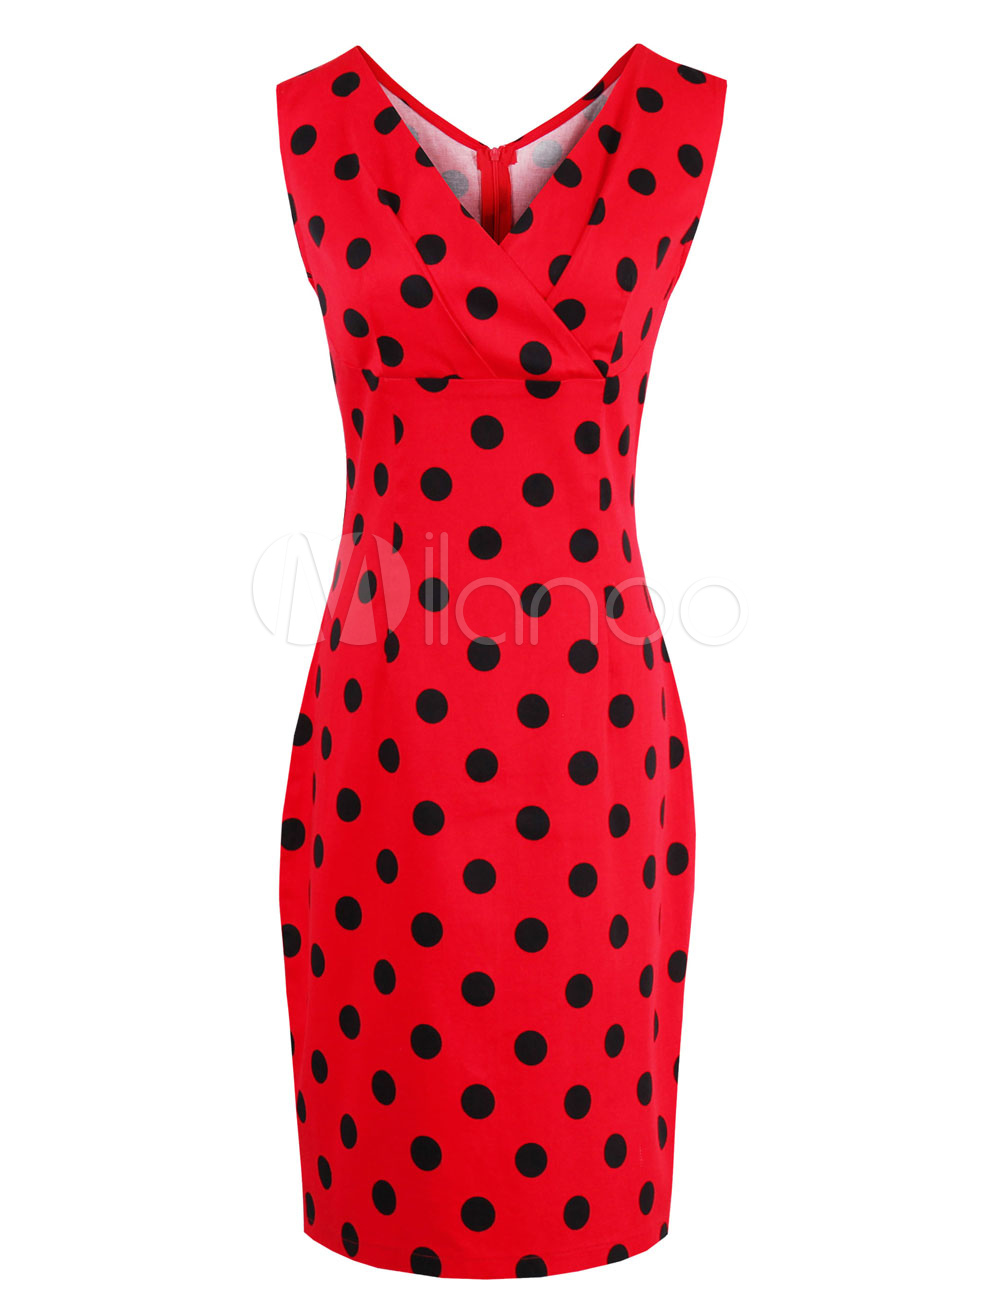 Red Vintage Dress V Neck Sleeveless Polka Dot Print Split Women's Summer Dresses (Women\\'s Clothing Vintage Dresses) photo